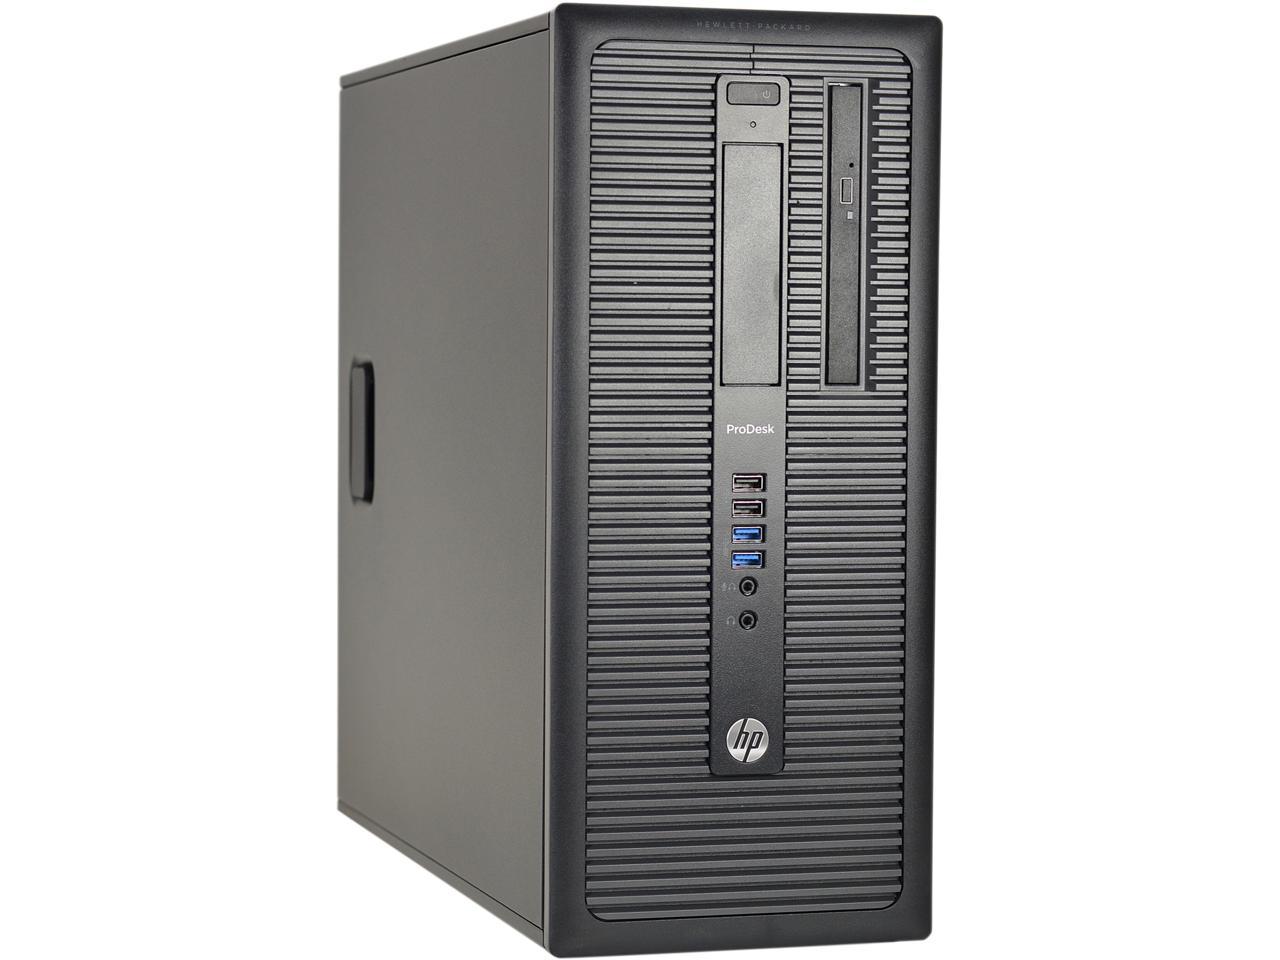 HP Desktop Computer 600 G1-T Intel Core i5 4th Gen 4570 (3.20 GHz) 8 GB DDR3 240 GB SSD Intel HD Graphics 4600 Windows 10 Pro 64-bit